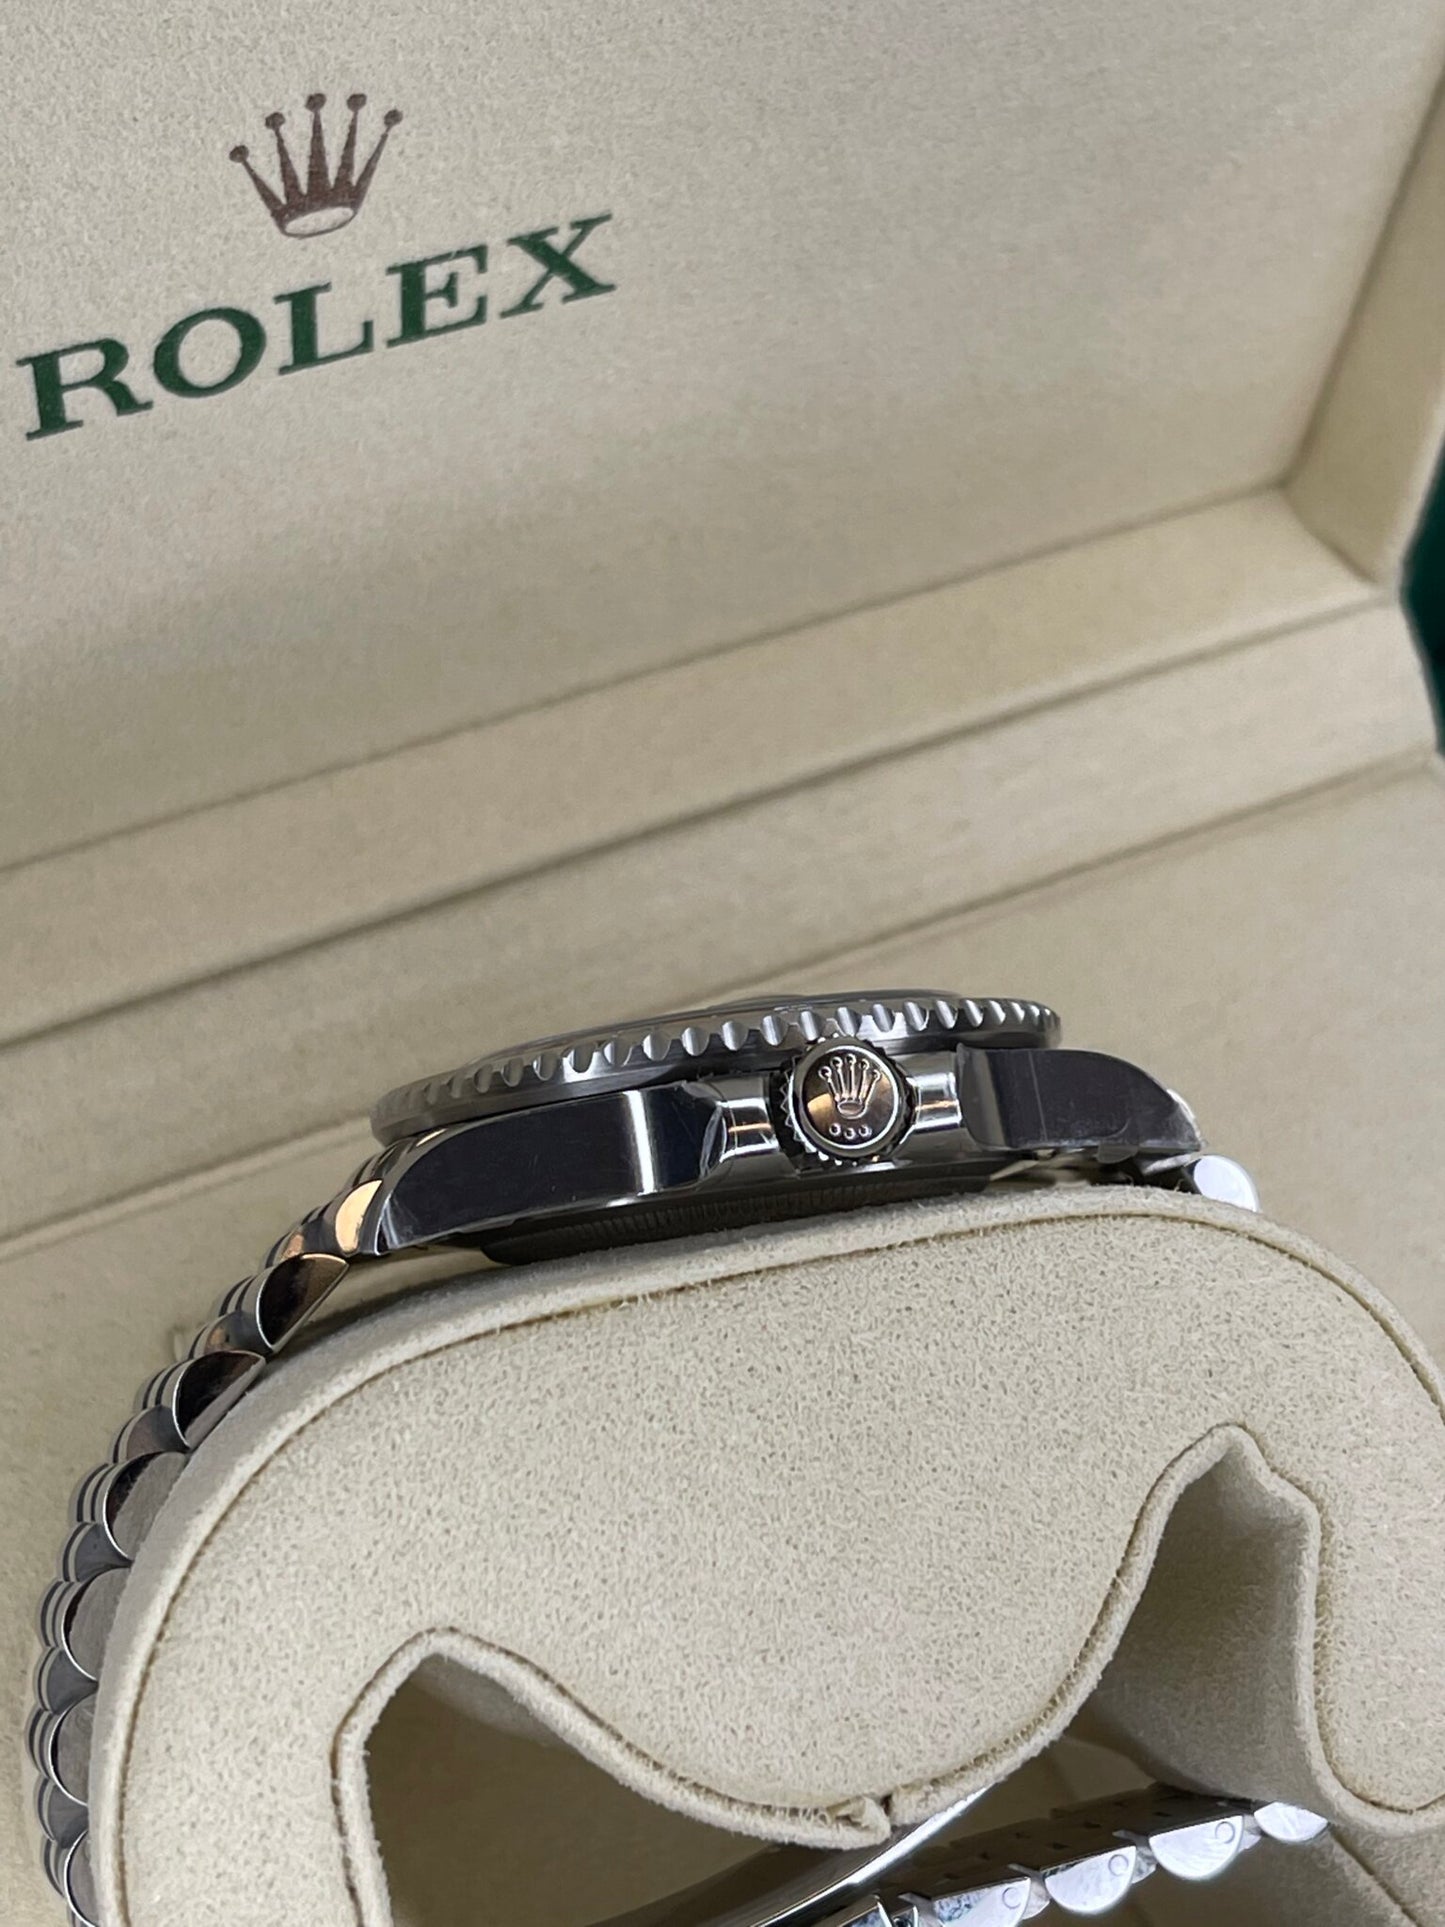 Rolex GMT-Master II 126710 BLNR Red/Blue Ceramic 904L Steel Best Edition on Oyster Bracelet